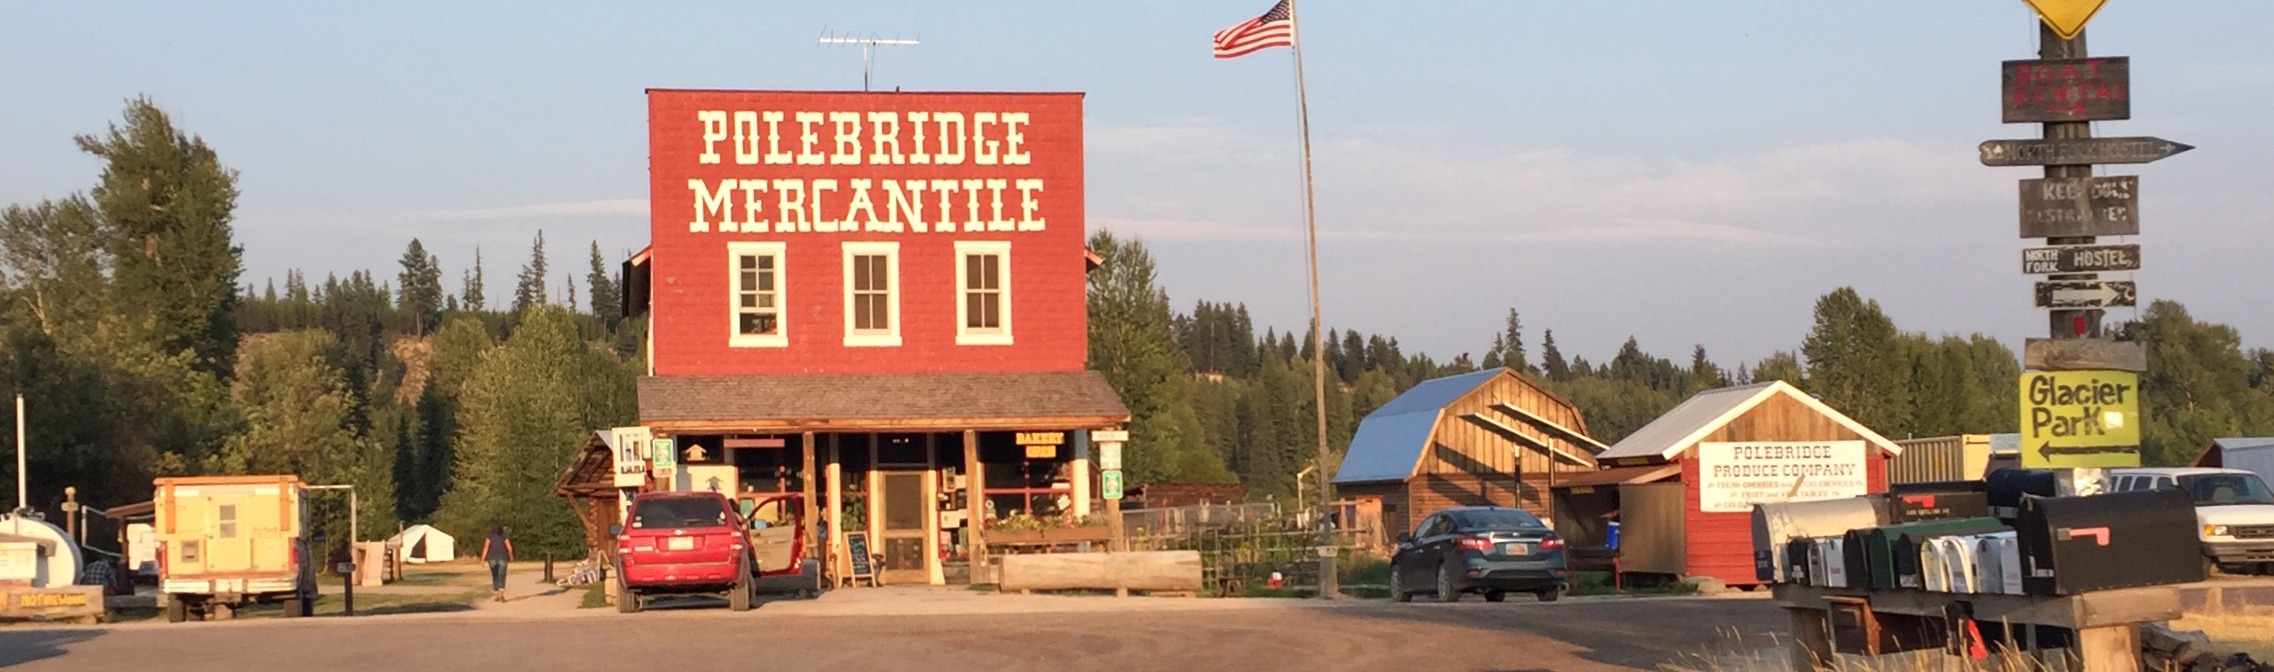 Your Perfect Weekend Getaway to Polebridge, Montana